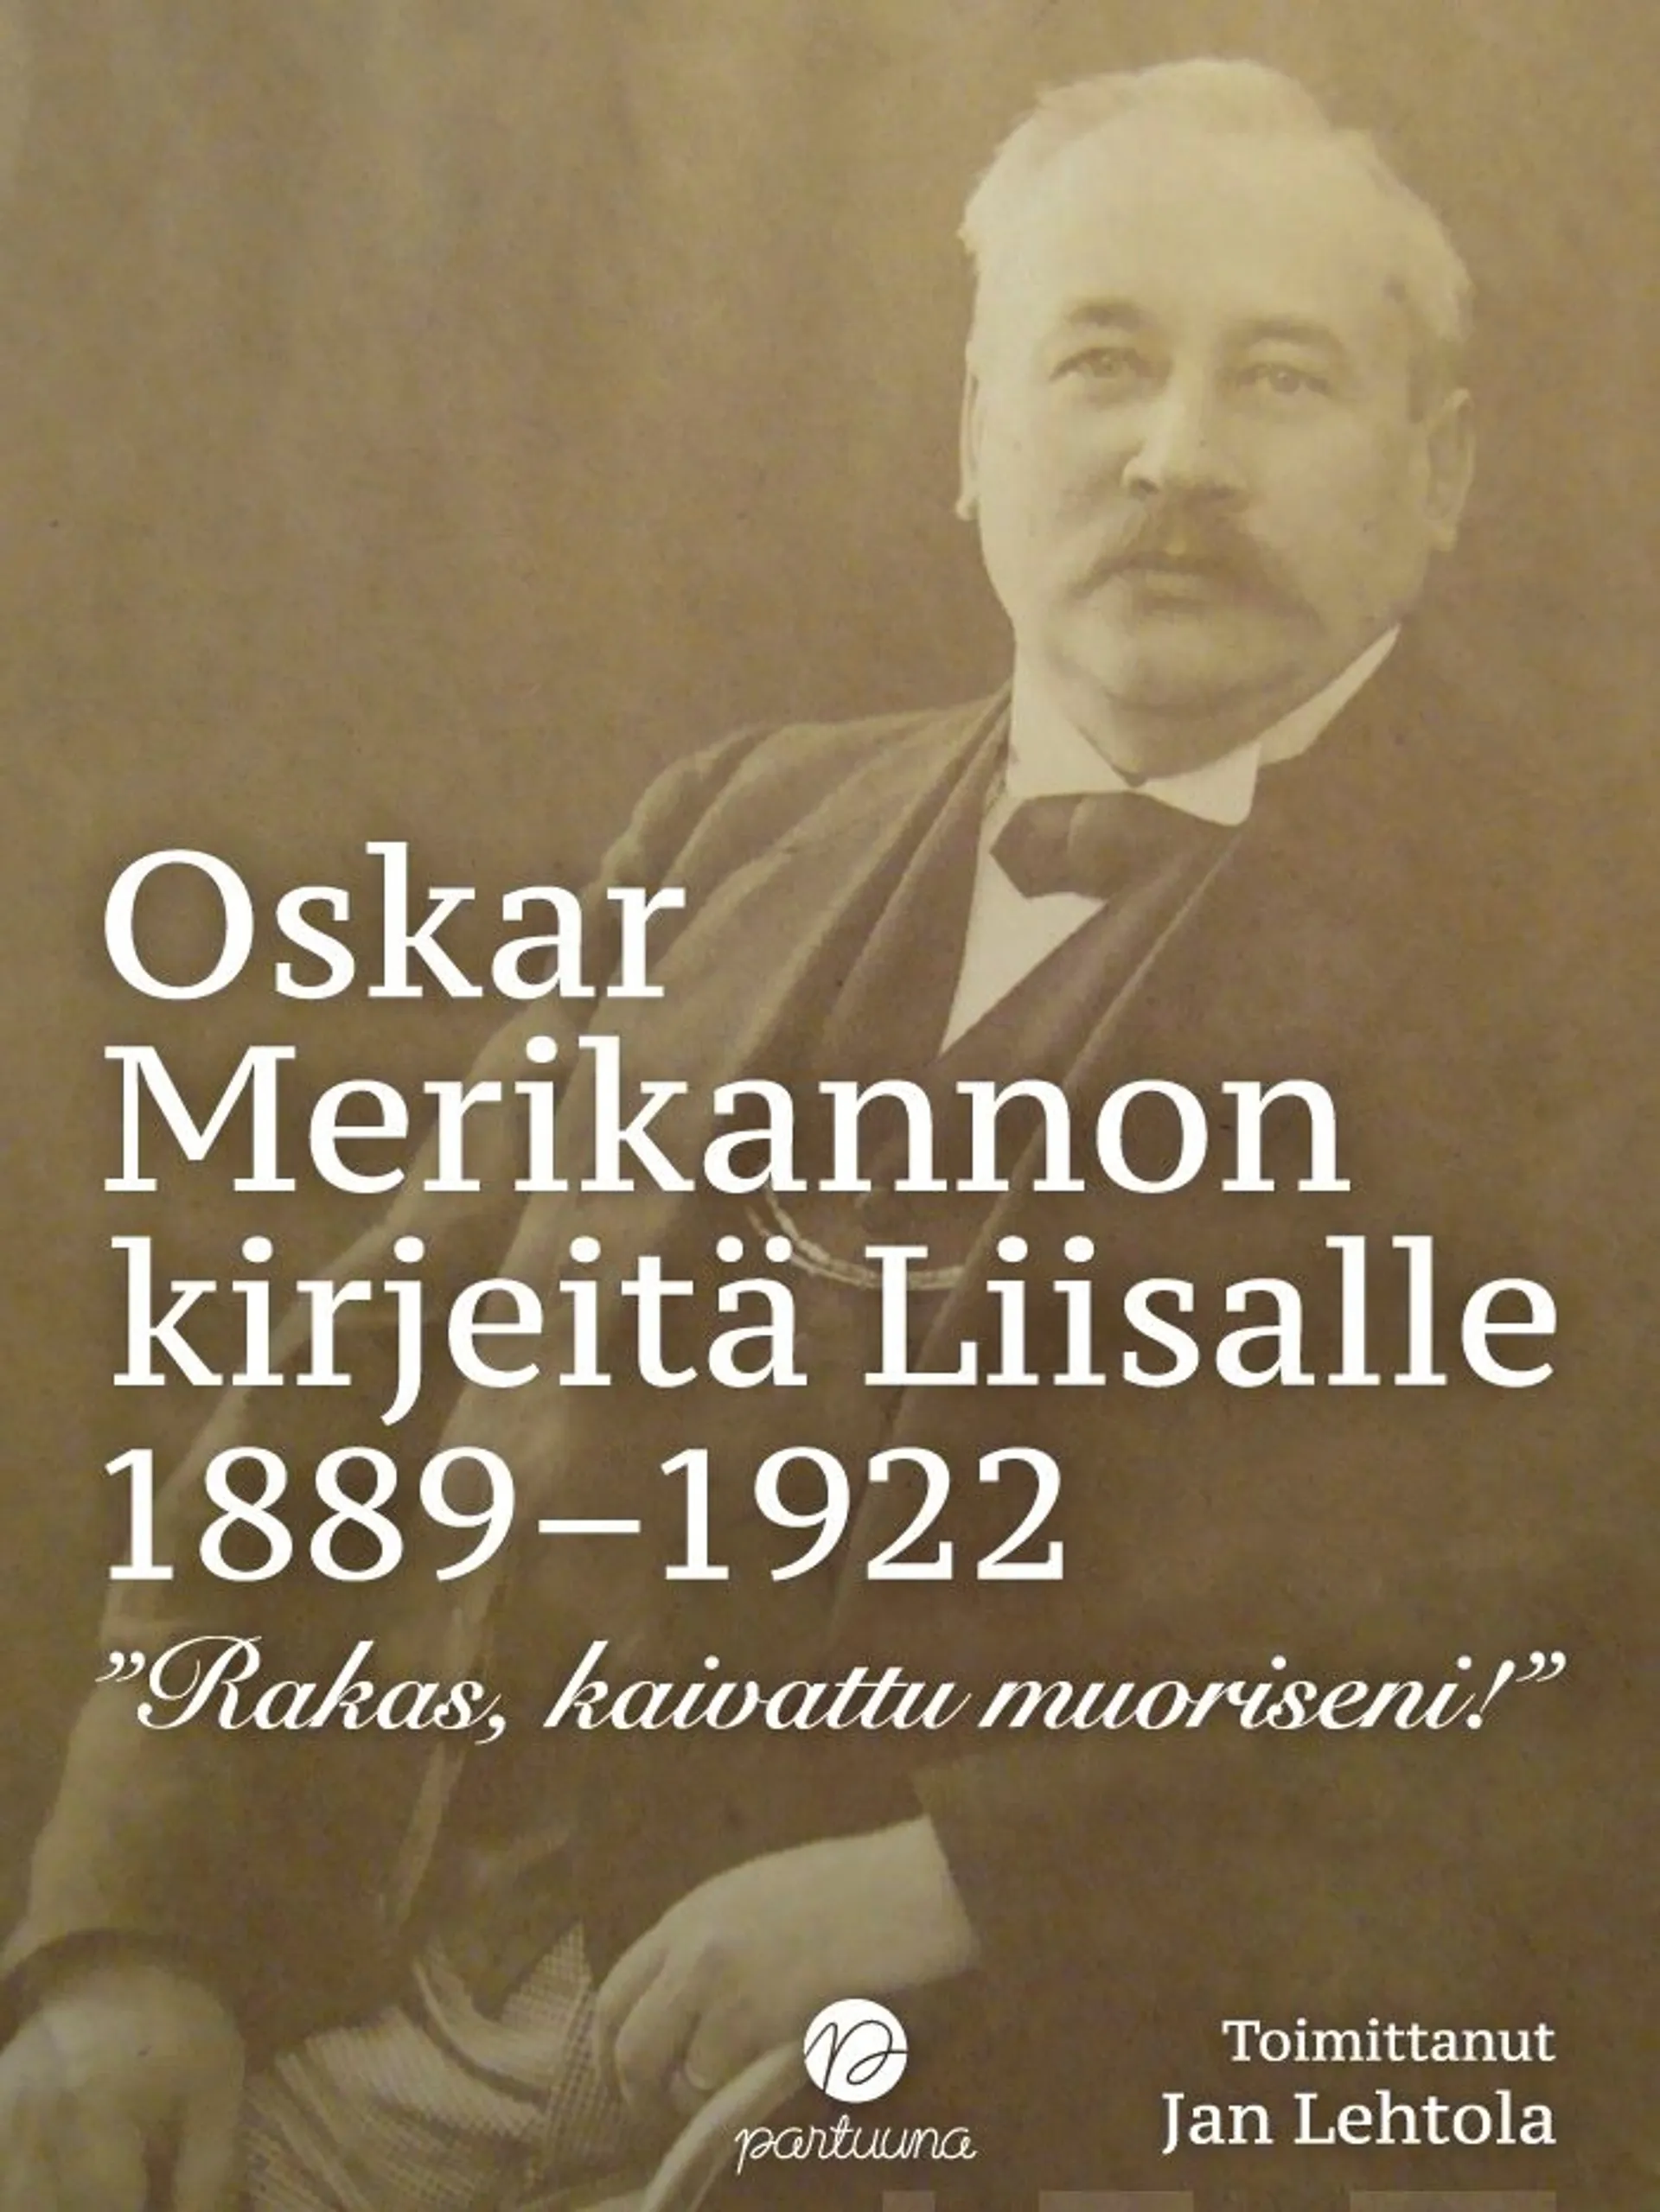 Oskar Merikannon kirjeitä Liisalle 1889-1922